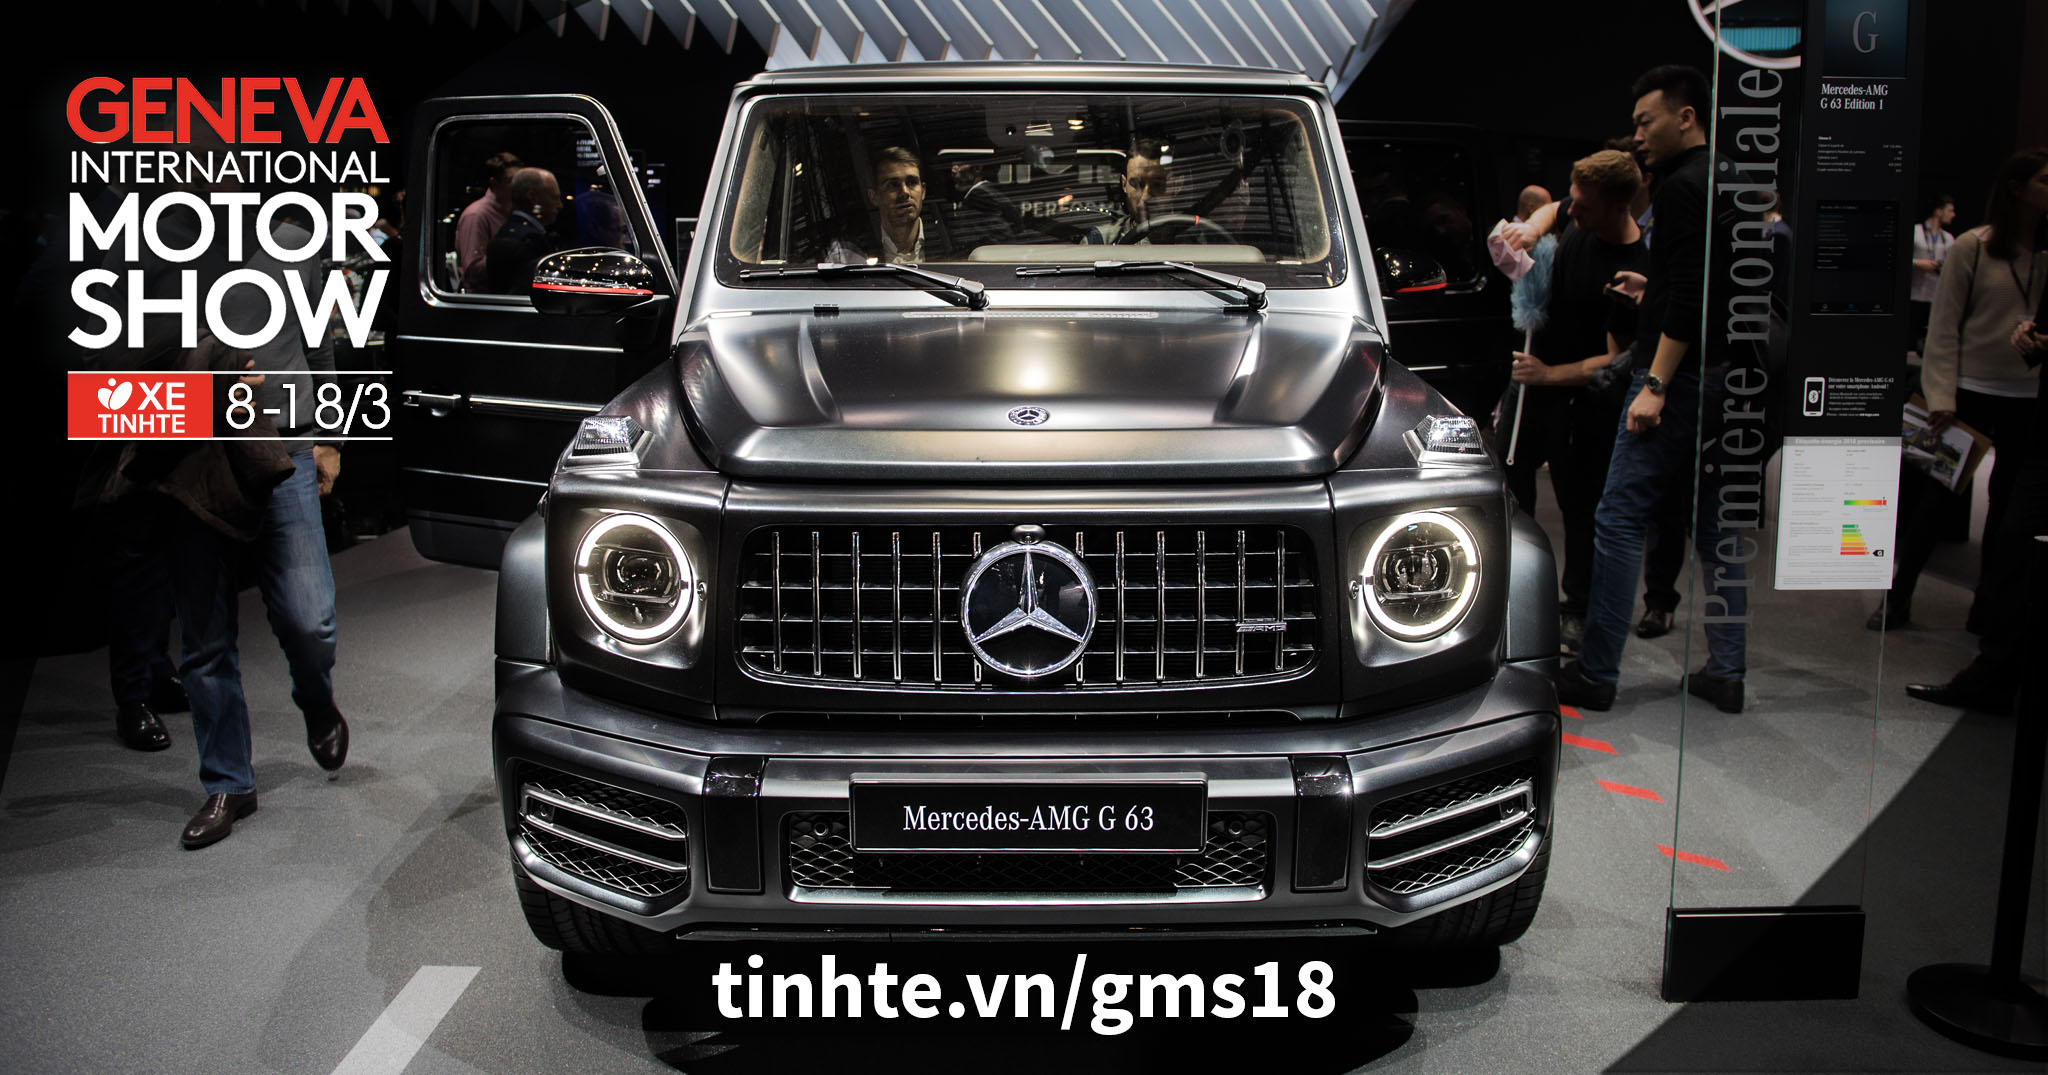 GMS18 Chi tiết Mercedes-AMG G63 2019 - động cơ V8 mạnh 577 mã lực, có tùy  chọn Multi-beam LED